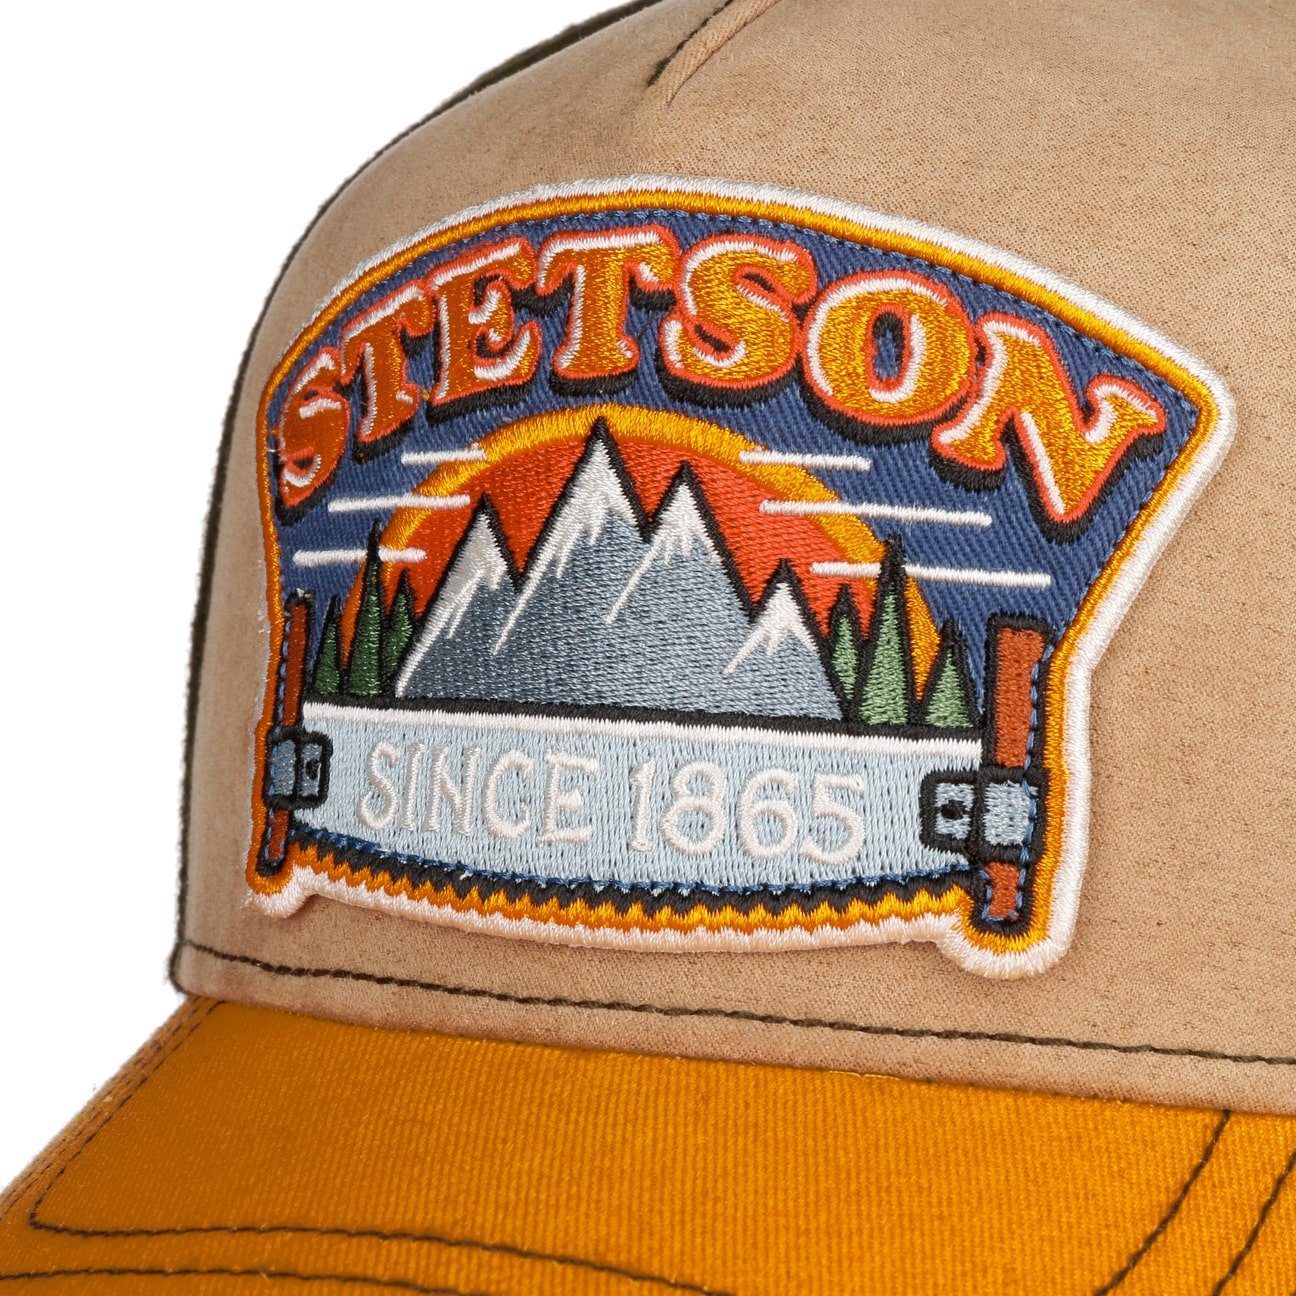 Baseball Stetson Cap Basecap Snapback (1-St)